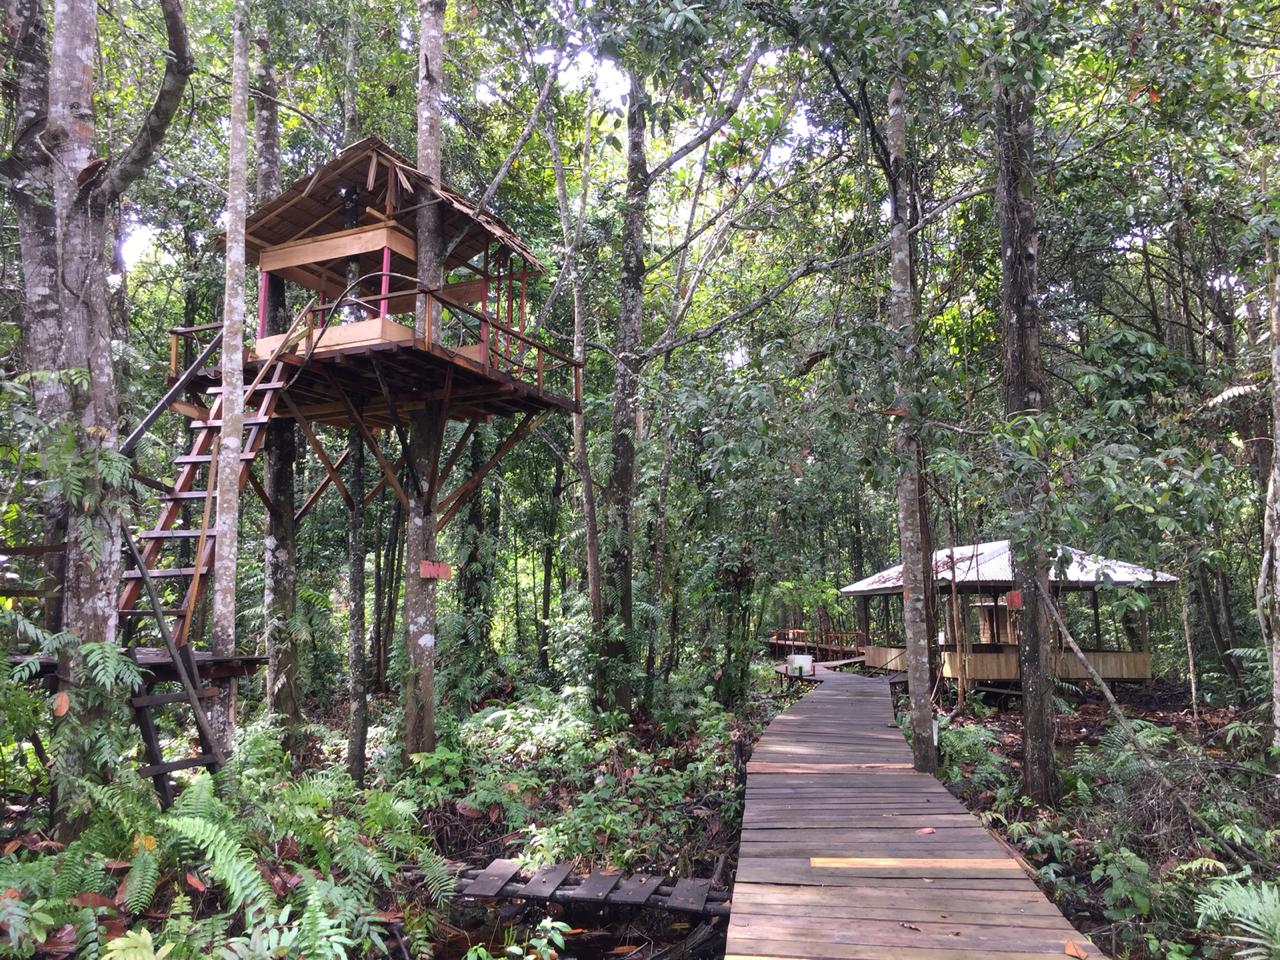 Rumah pohon (kiri) tempat pengunjung bersantai di Taman Ekowisata Kebon Sari,  6 Oktober 2020. Dokumentasi: Komunitas Konservasi Indonesia (KKI) Warsi